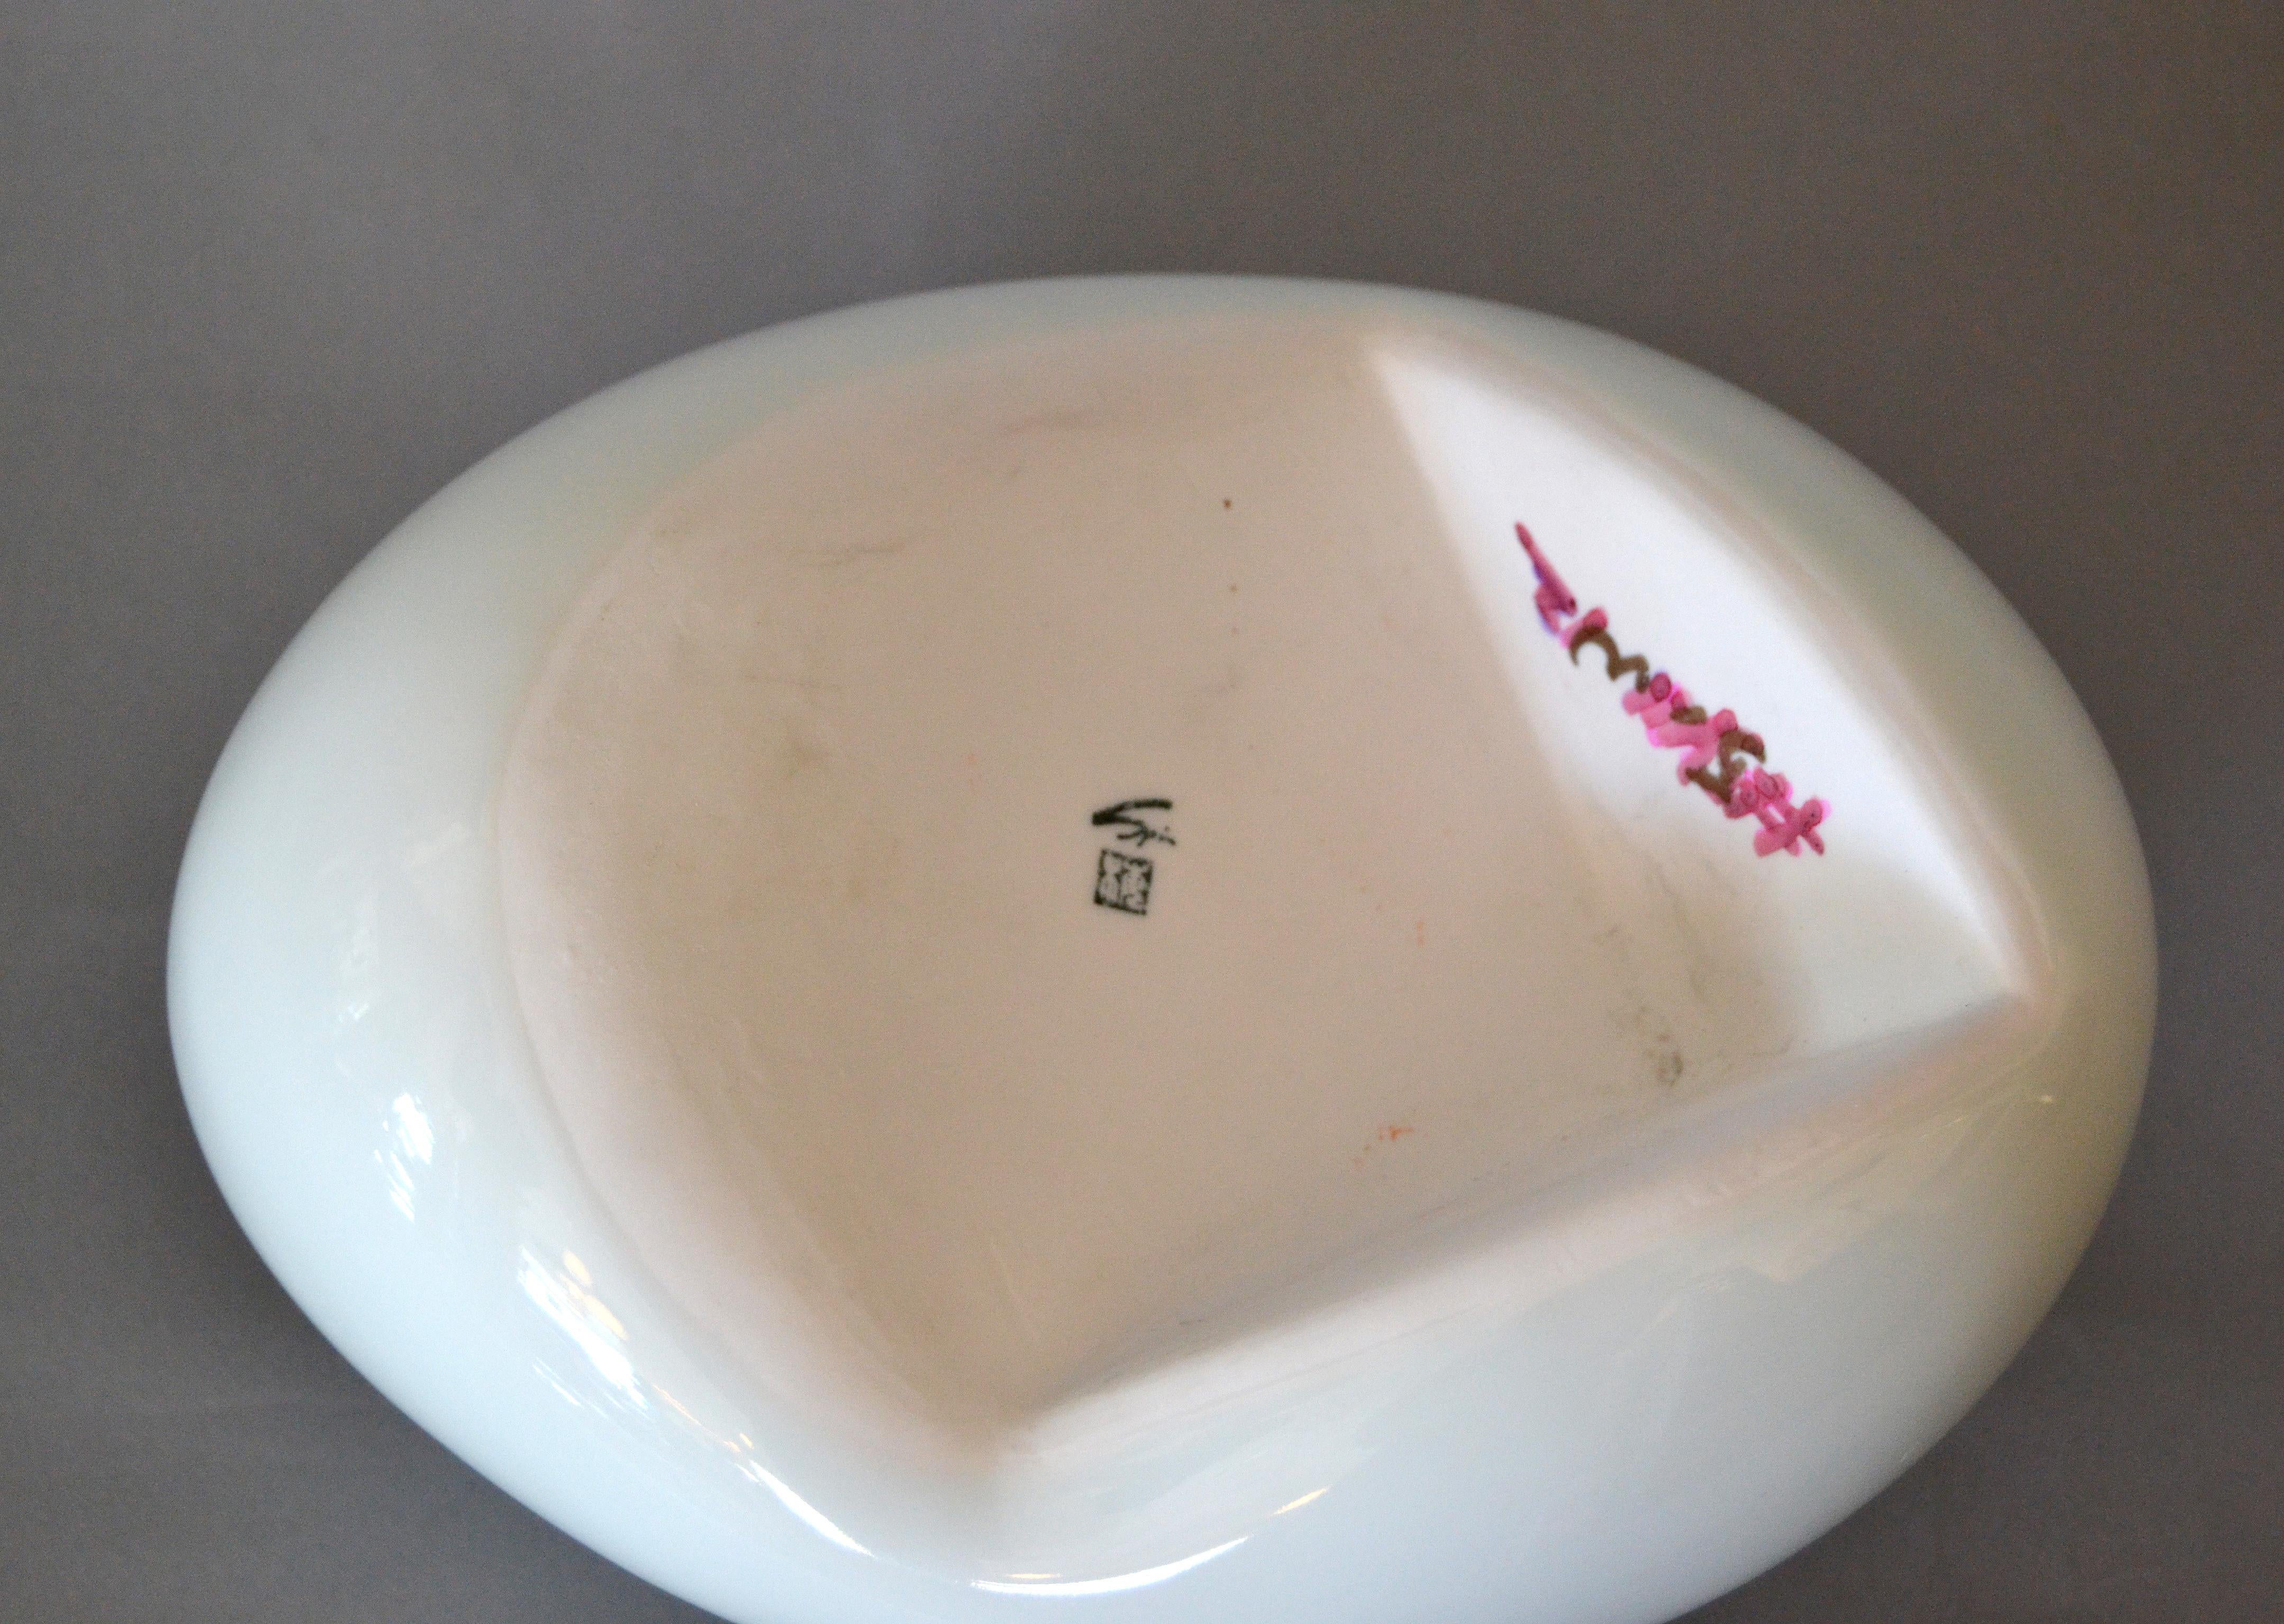 Organic Asian Modern White Ceramic Water Bag Vase Made by Spin Ceramics Shanghai 1